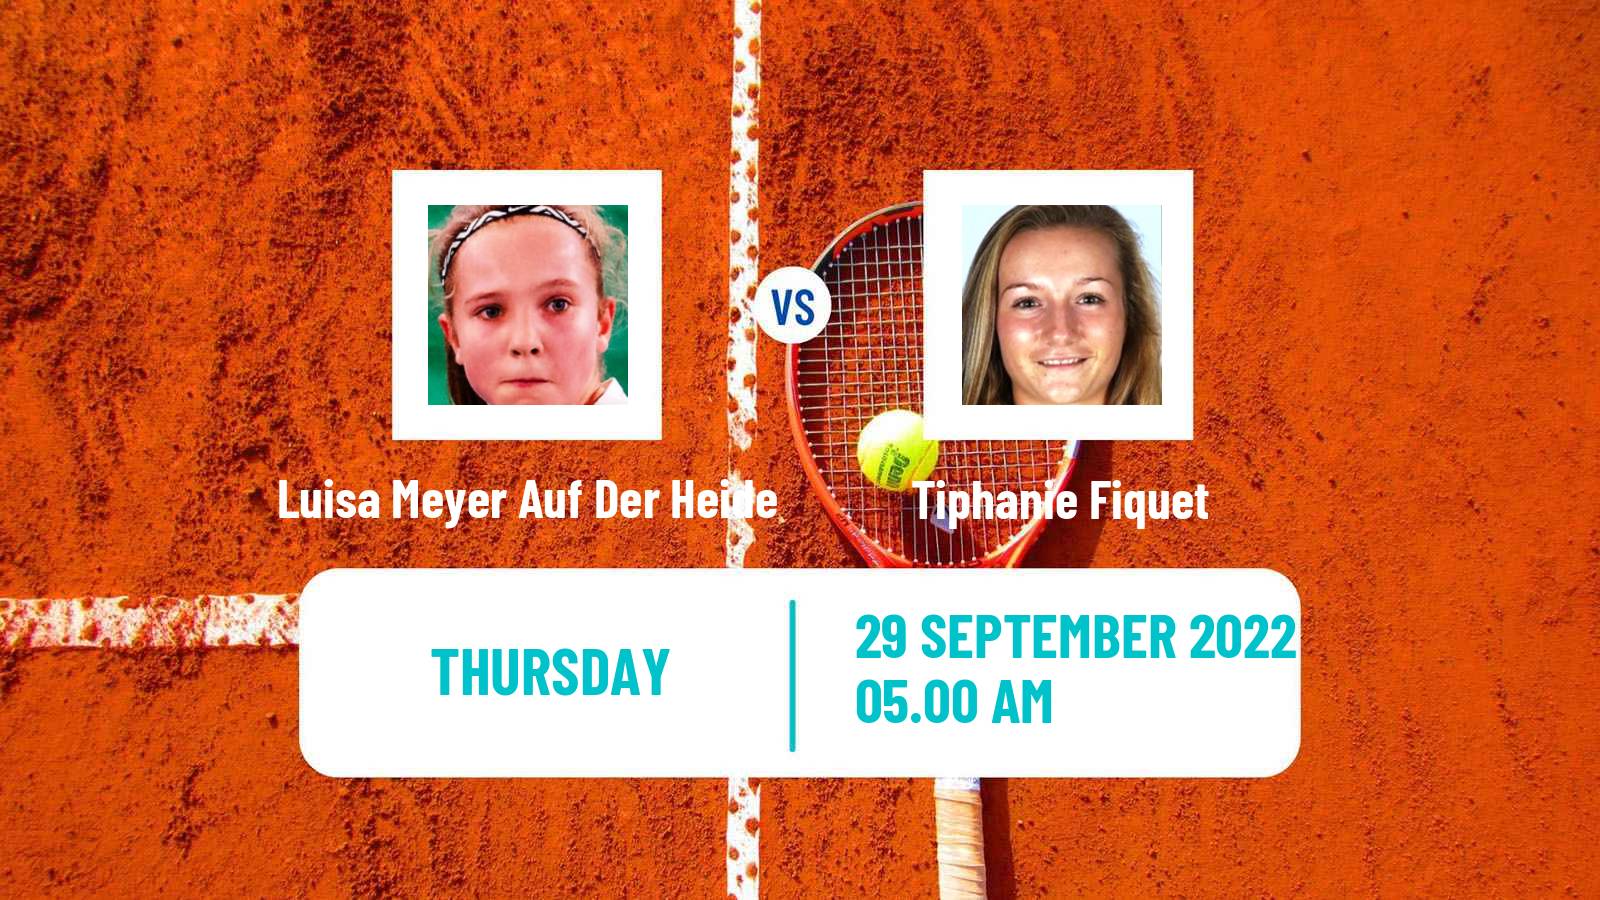 Tennis ITF Tournaments Luisa Meyer Auf Der Heide - Tiphanie Fiquet